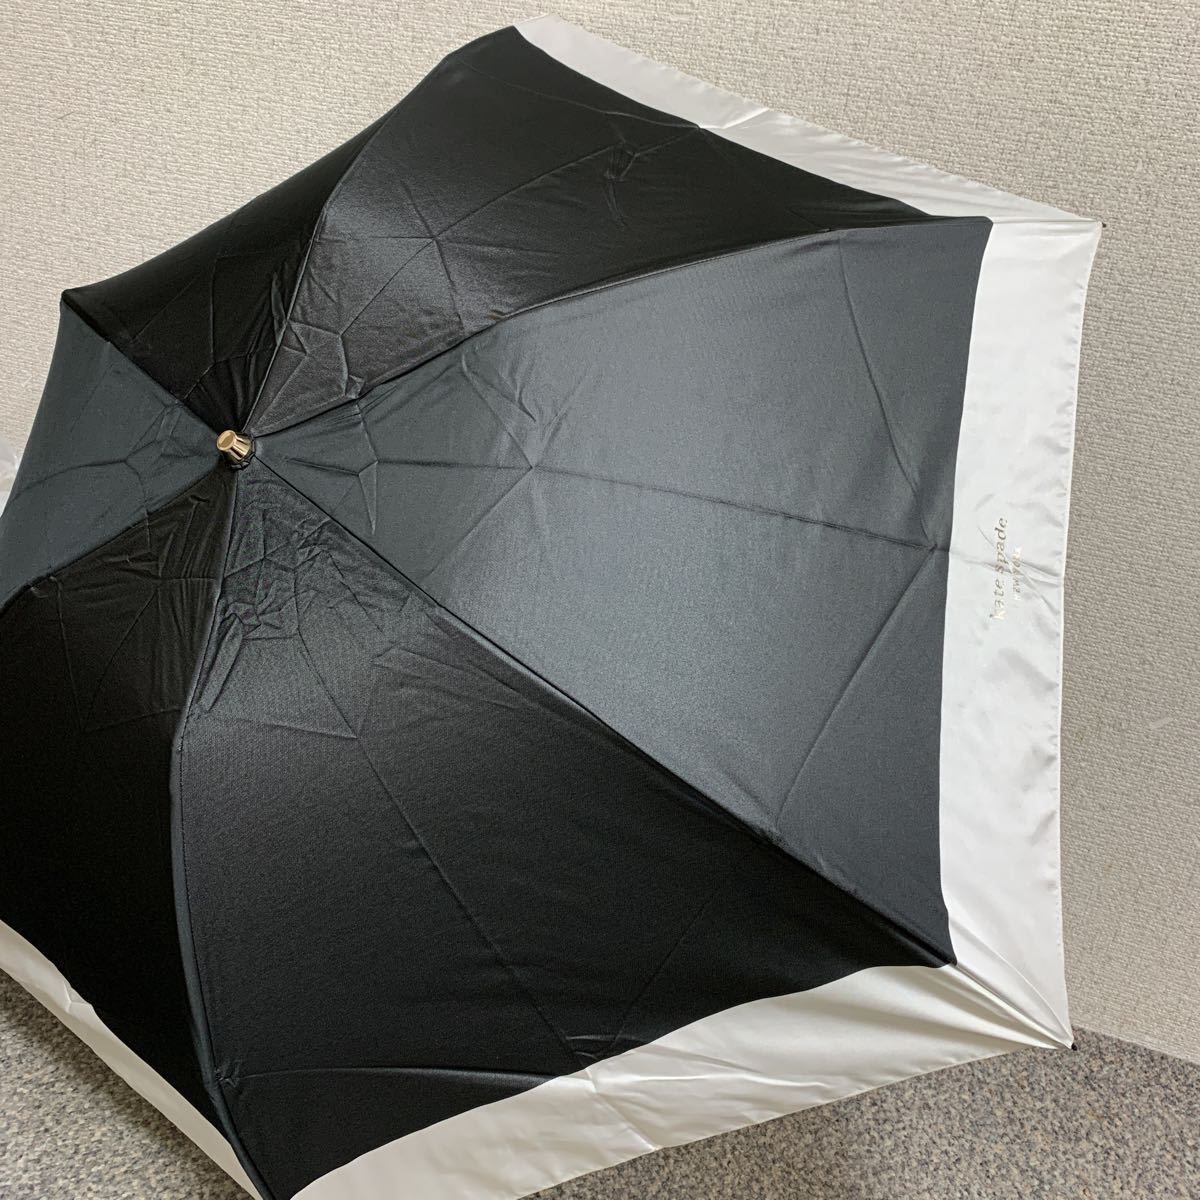  новый товар Kate Spade зонт от дождя зонт складной зонт легкий 